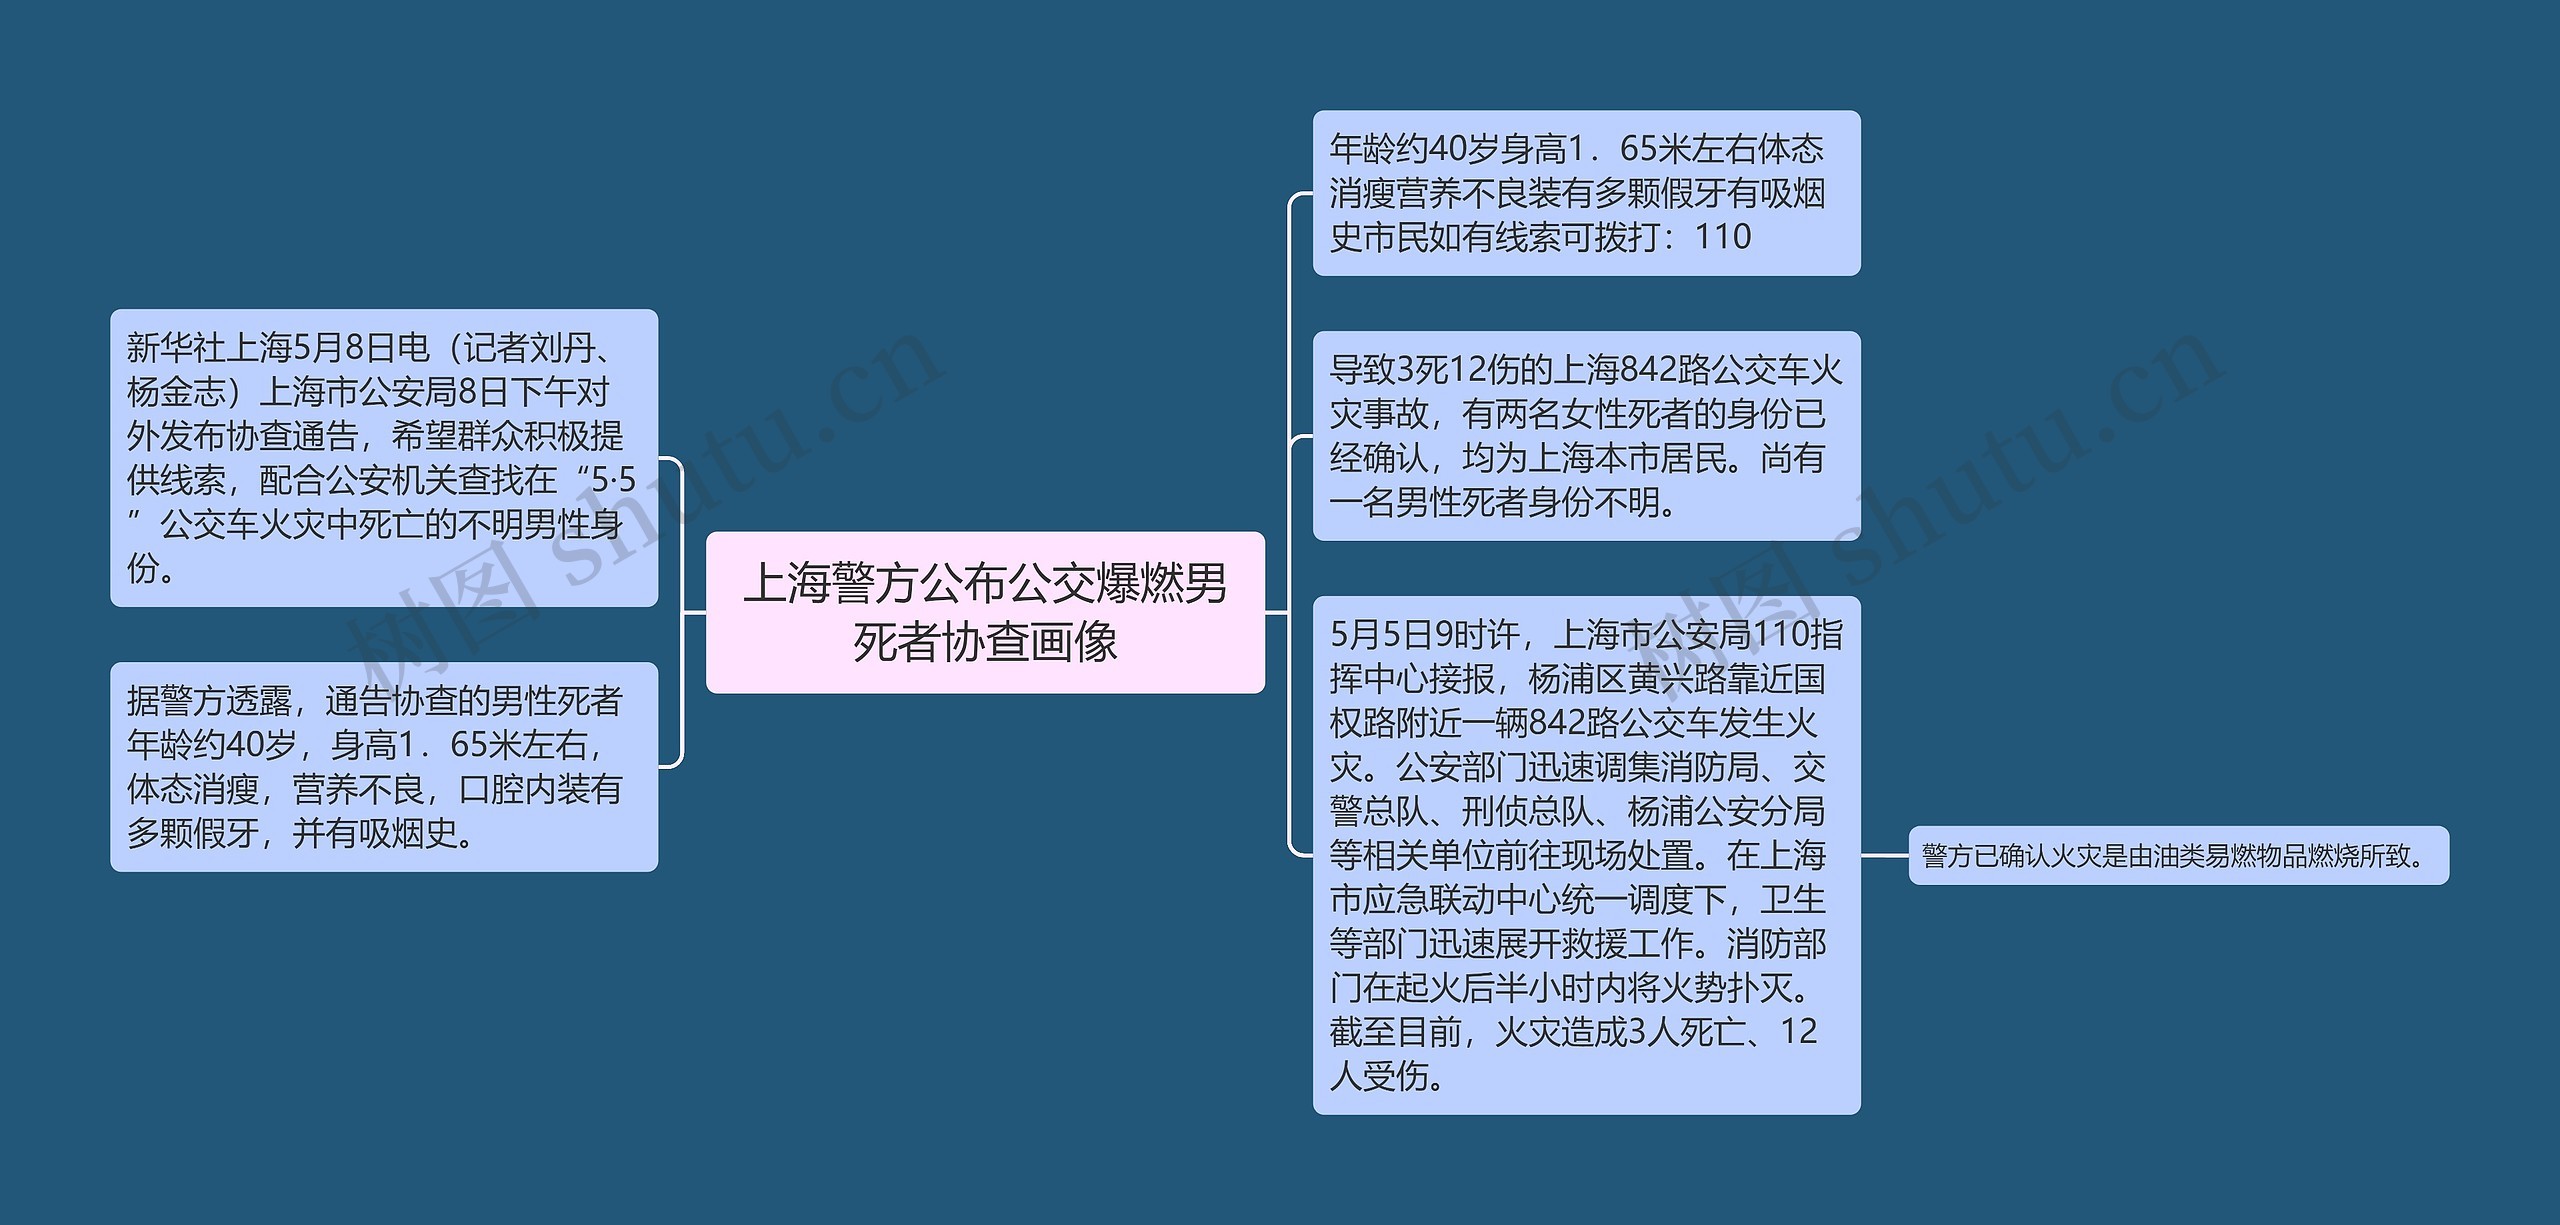 上海警方公布公交爆燃男死者协查画像思维导图